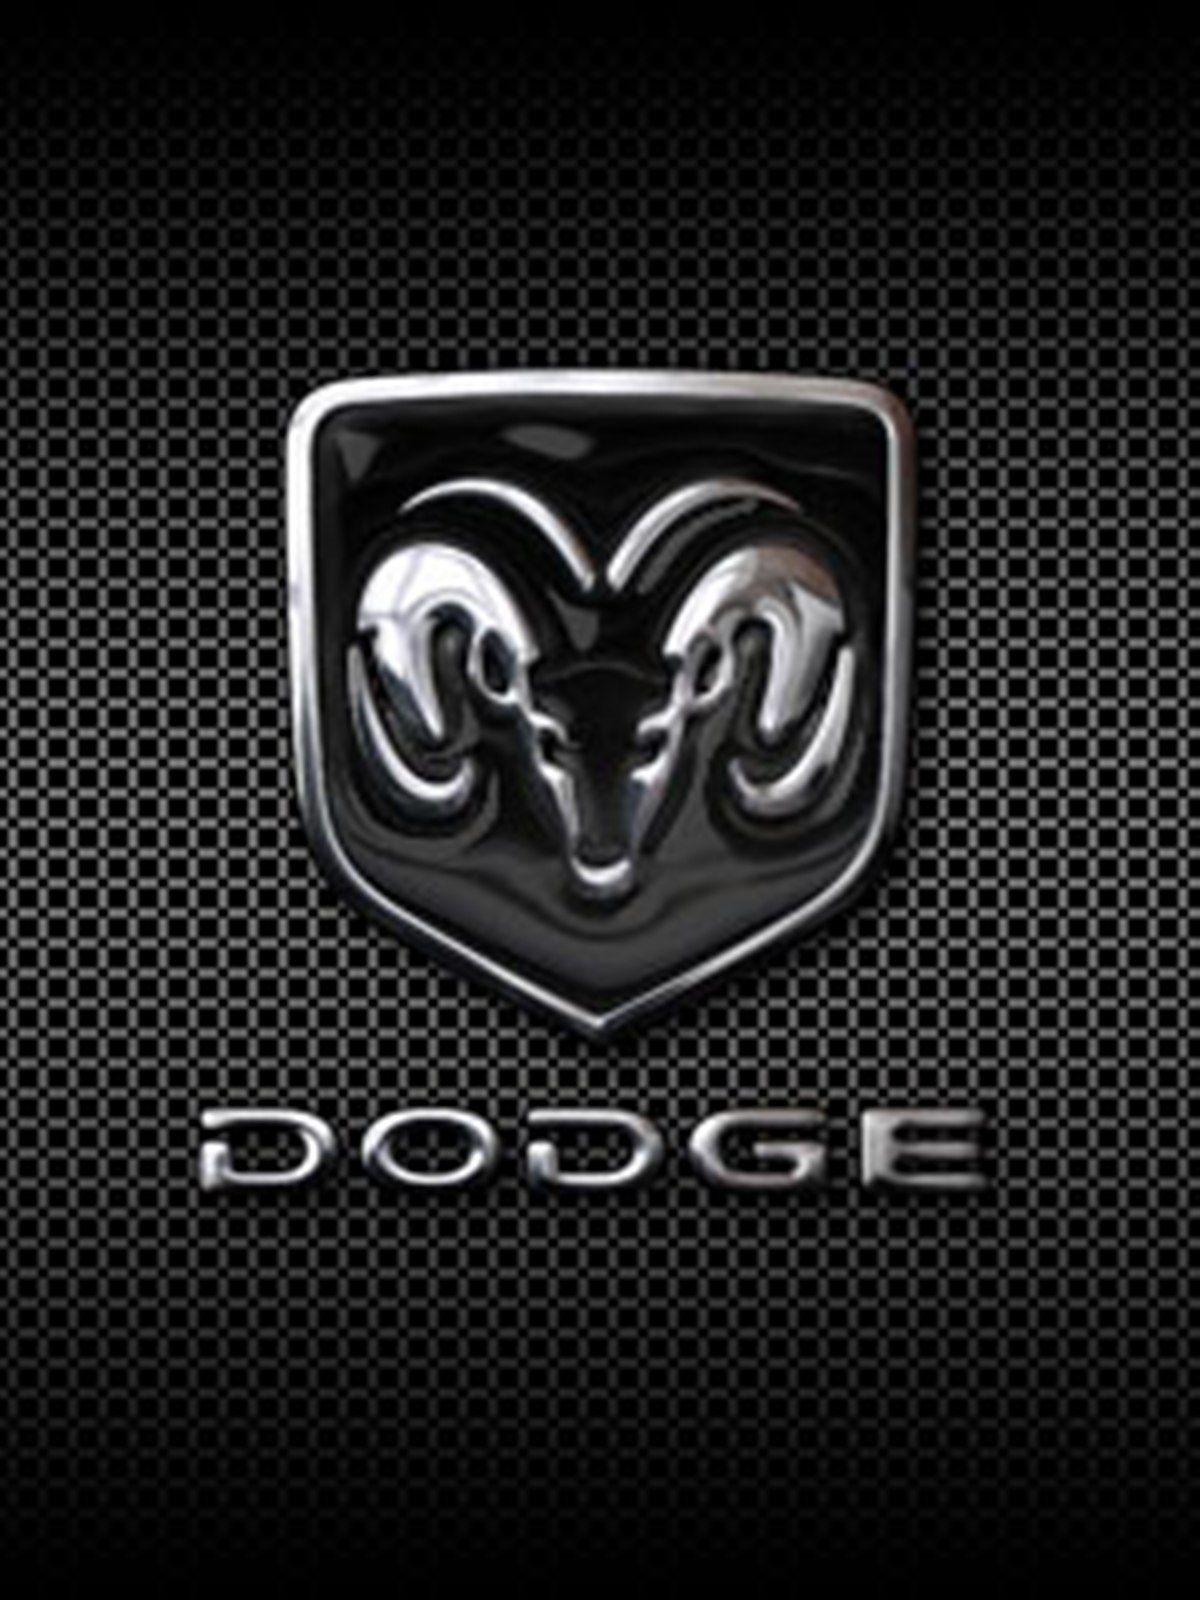 dodge logo wallpaperΩDGΣ. Dodge, Dodge logo